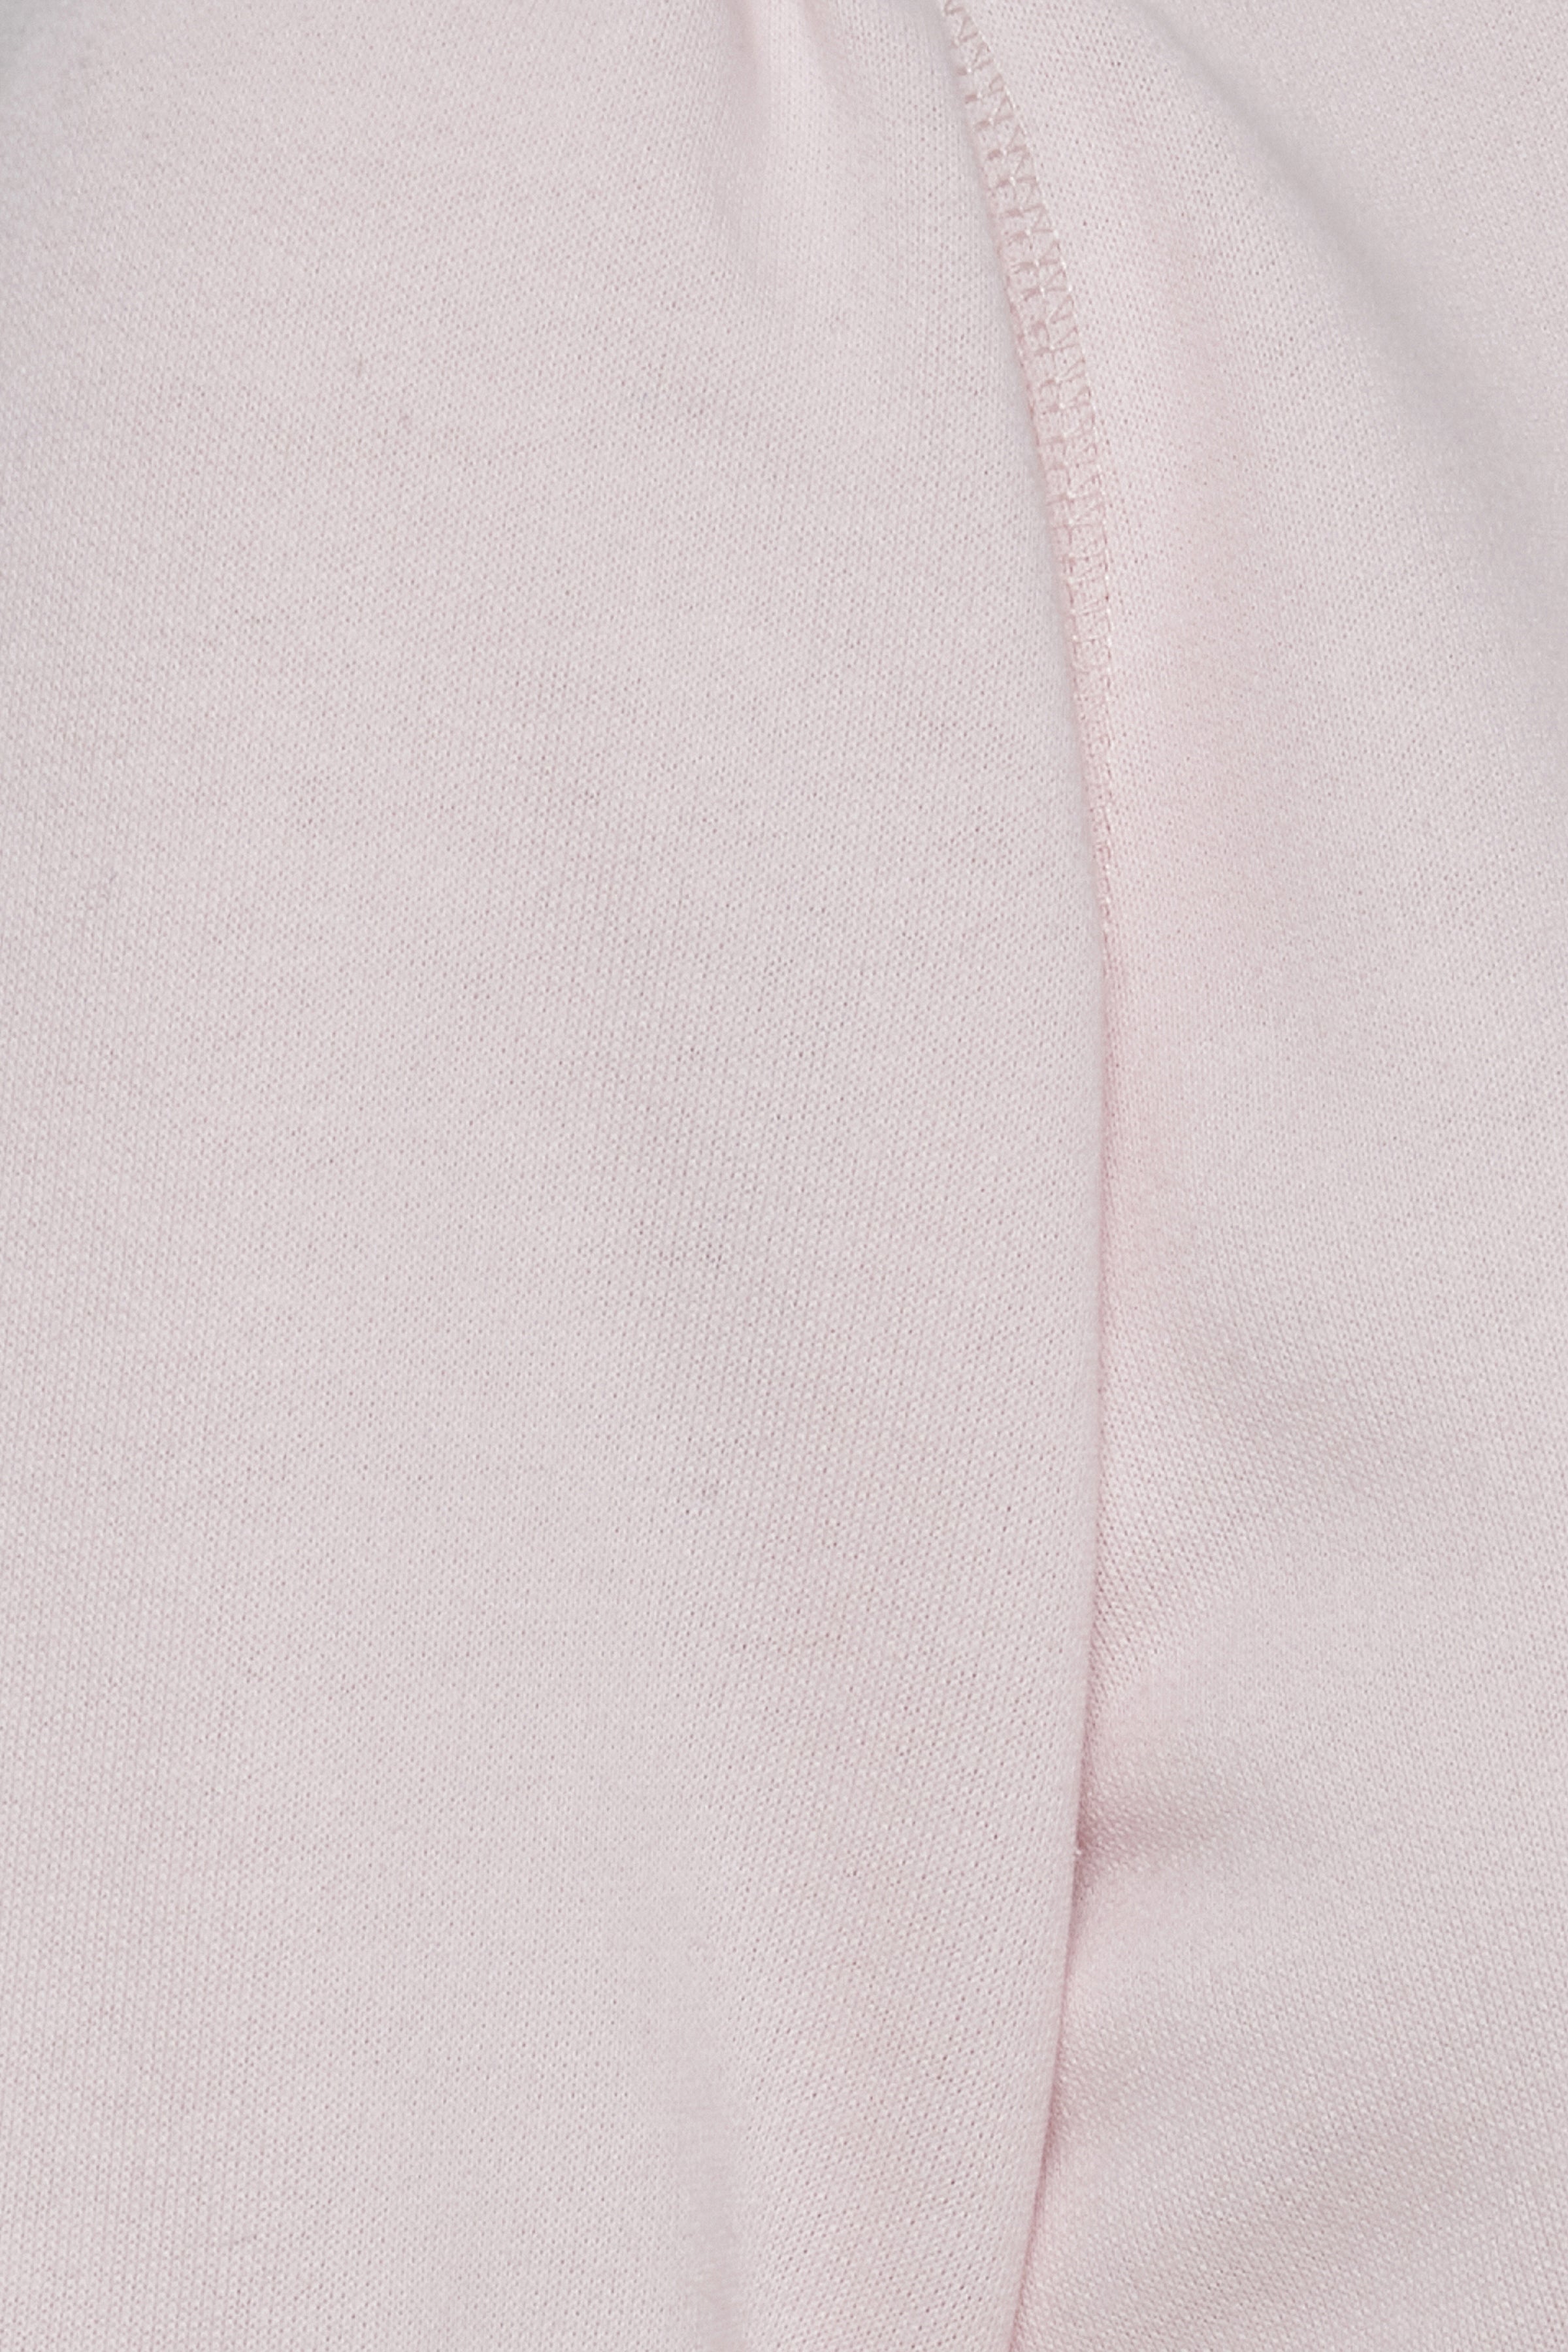 Juliany Sweater (Pink)